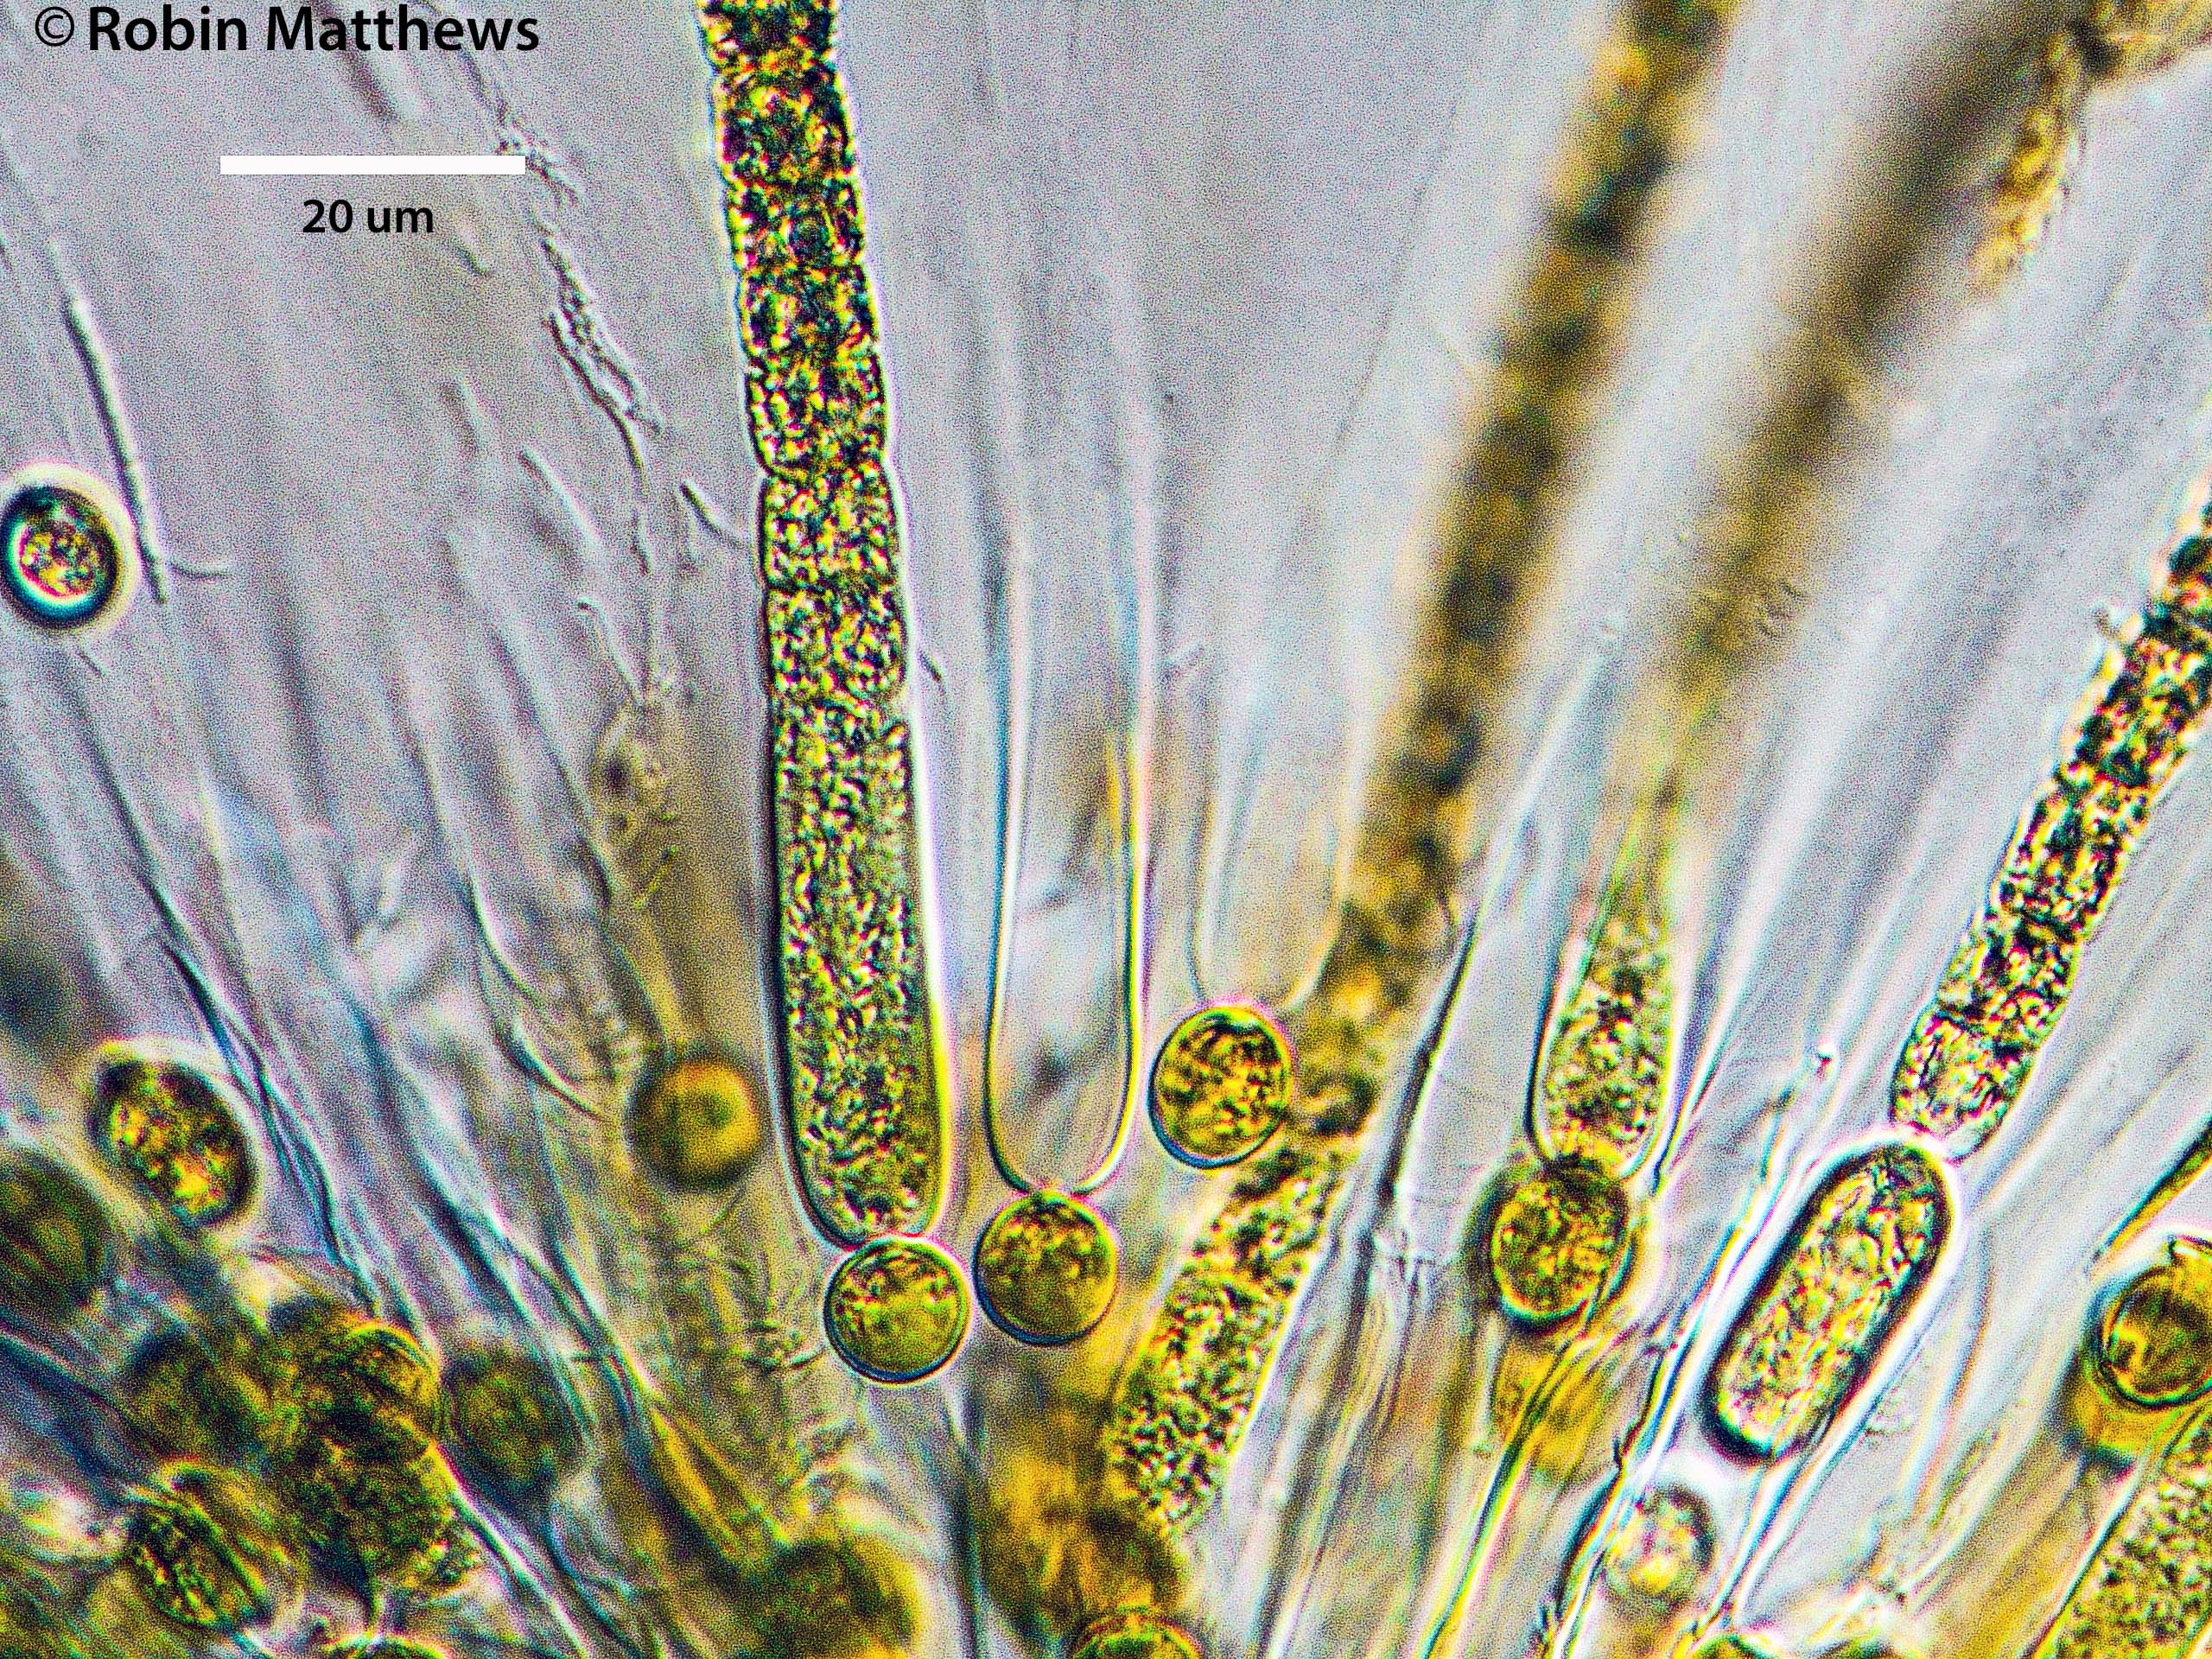 Cyanobacteria/Nostocales/Gloeotrichiaceae/Gloeotrichia/echinulata/gloeotrichia-echinulata-496.jpg